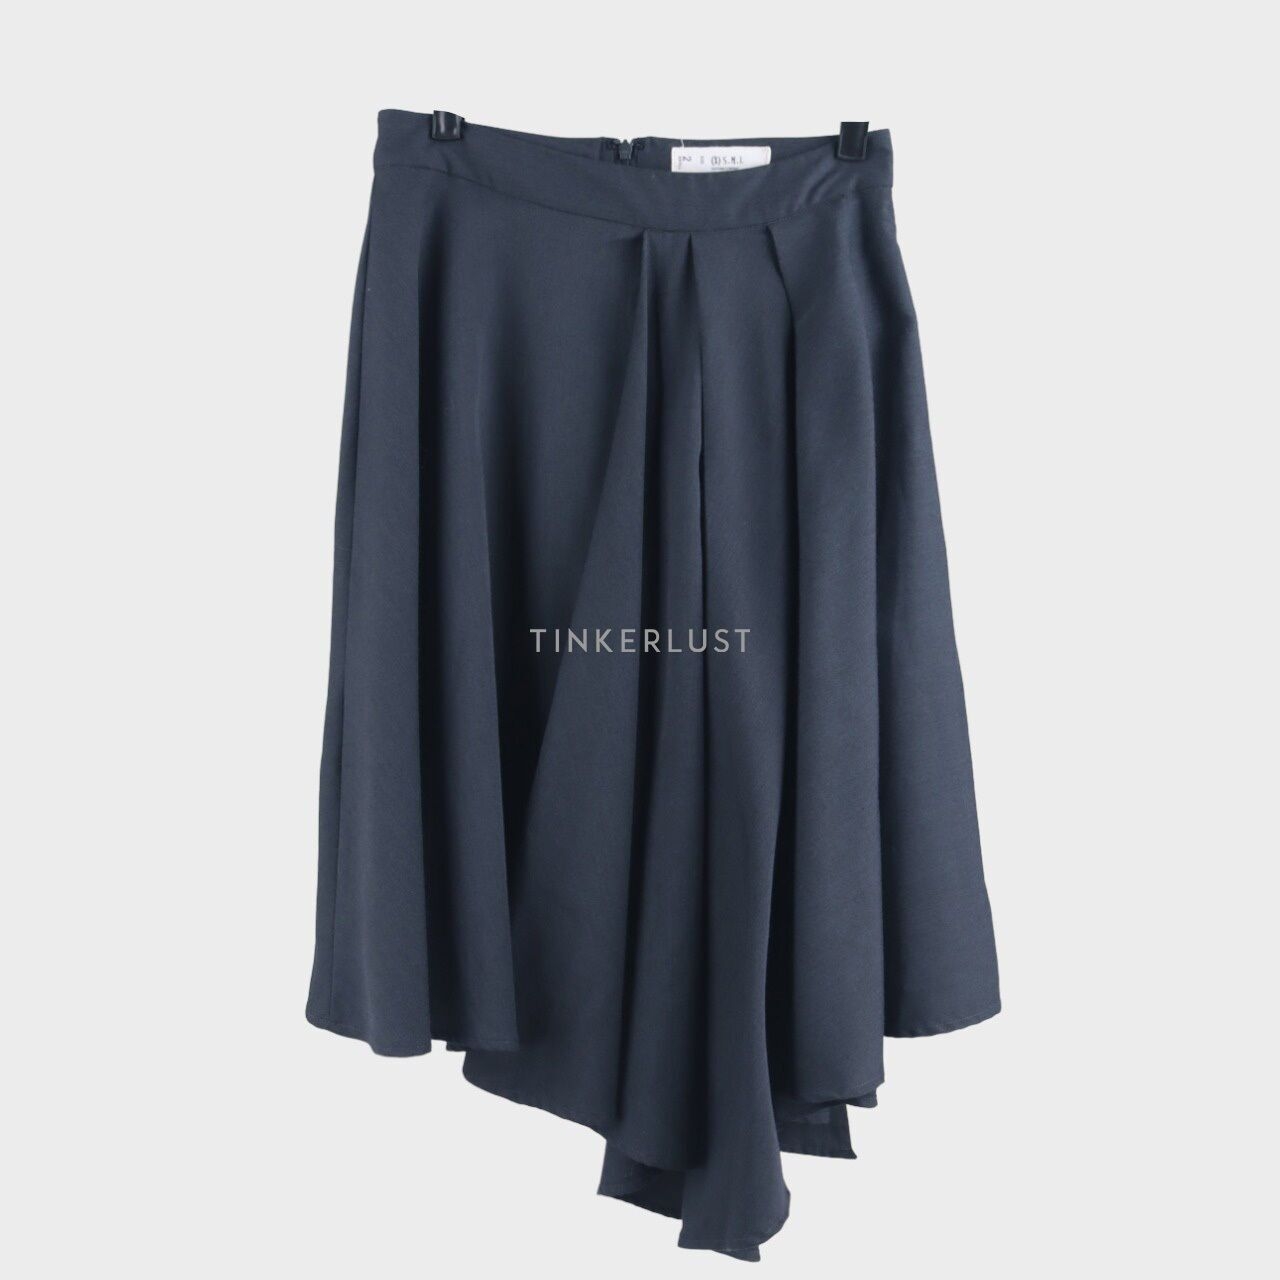 (X)SML Dark Grey Midi Skirt